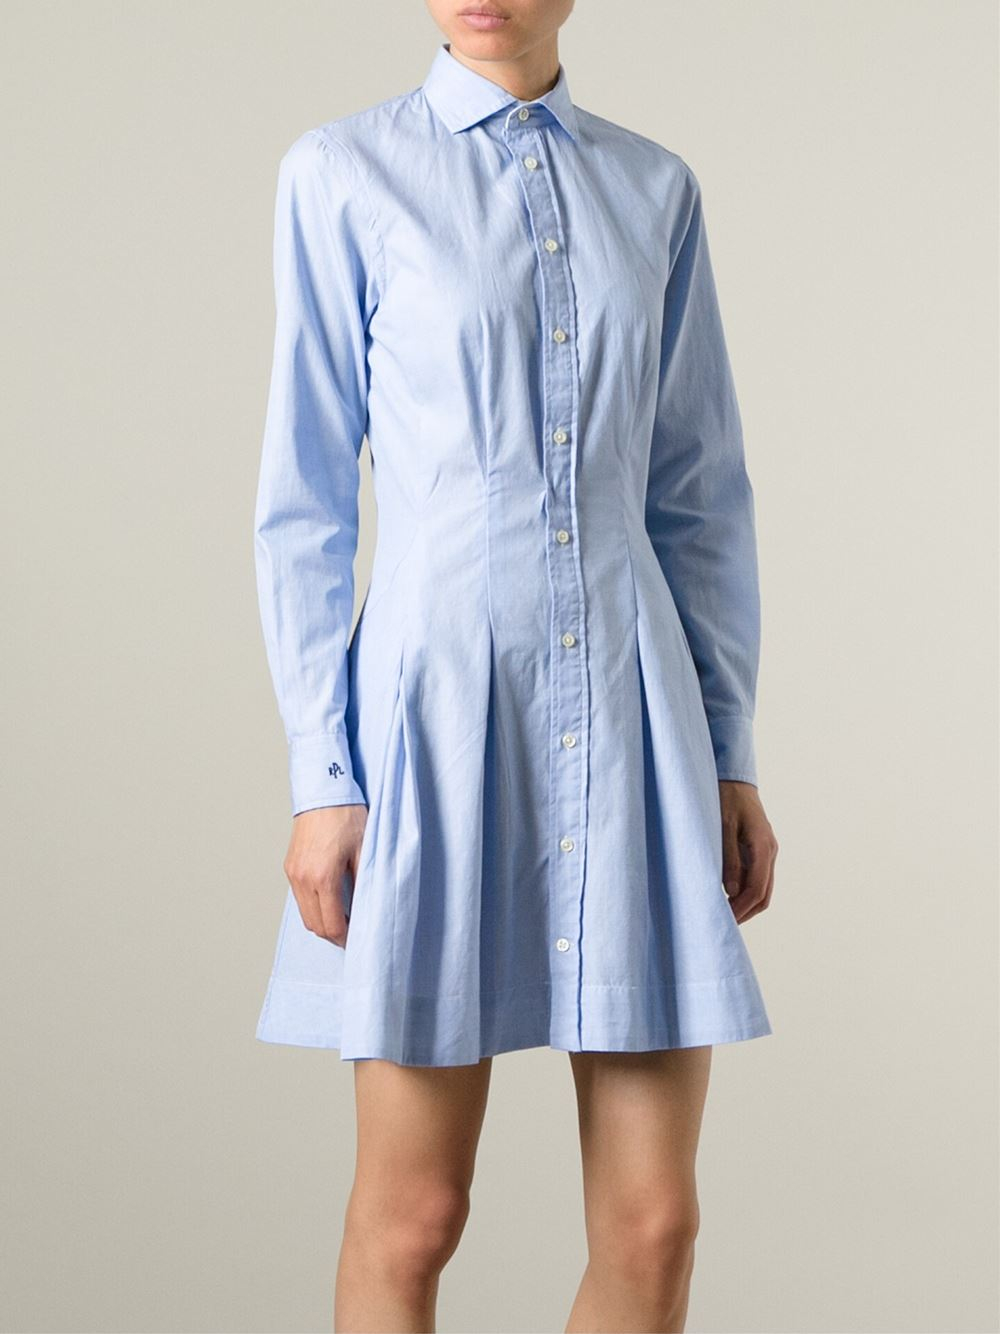 Polo Ralph Lauren Flared Shirt Dress in Blue - Lyst